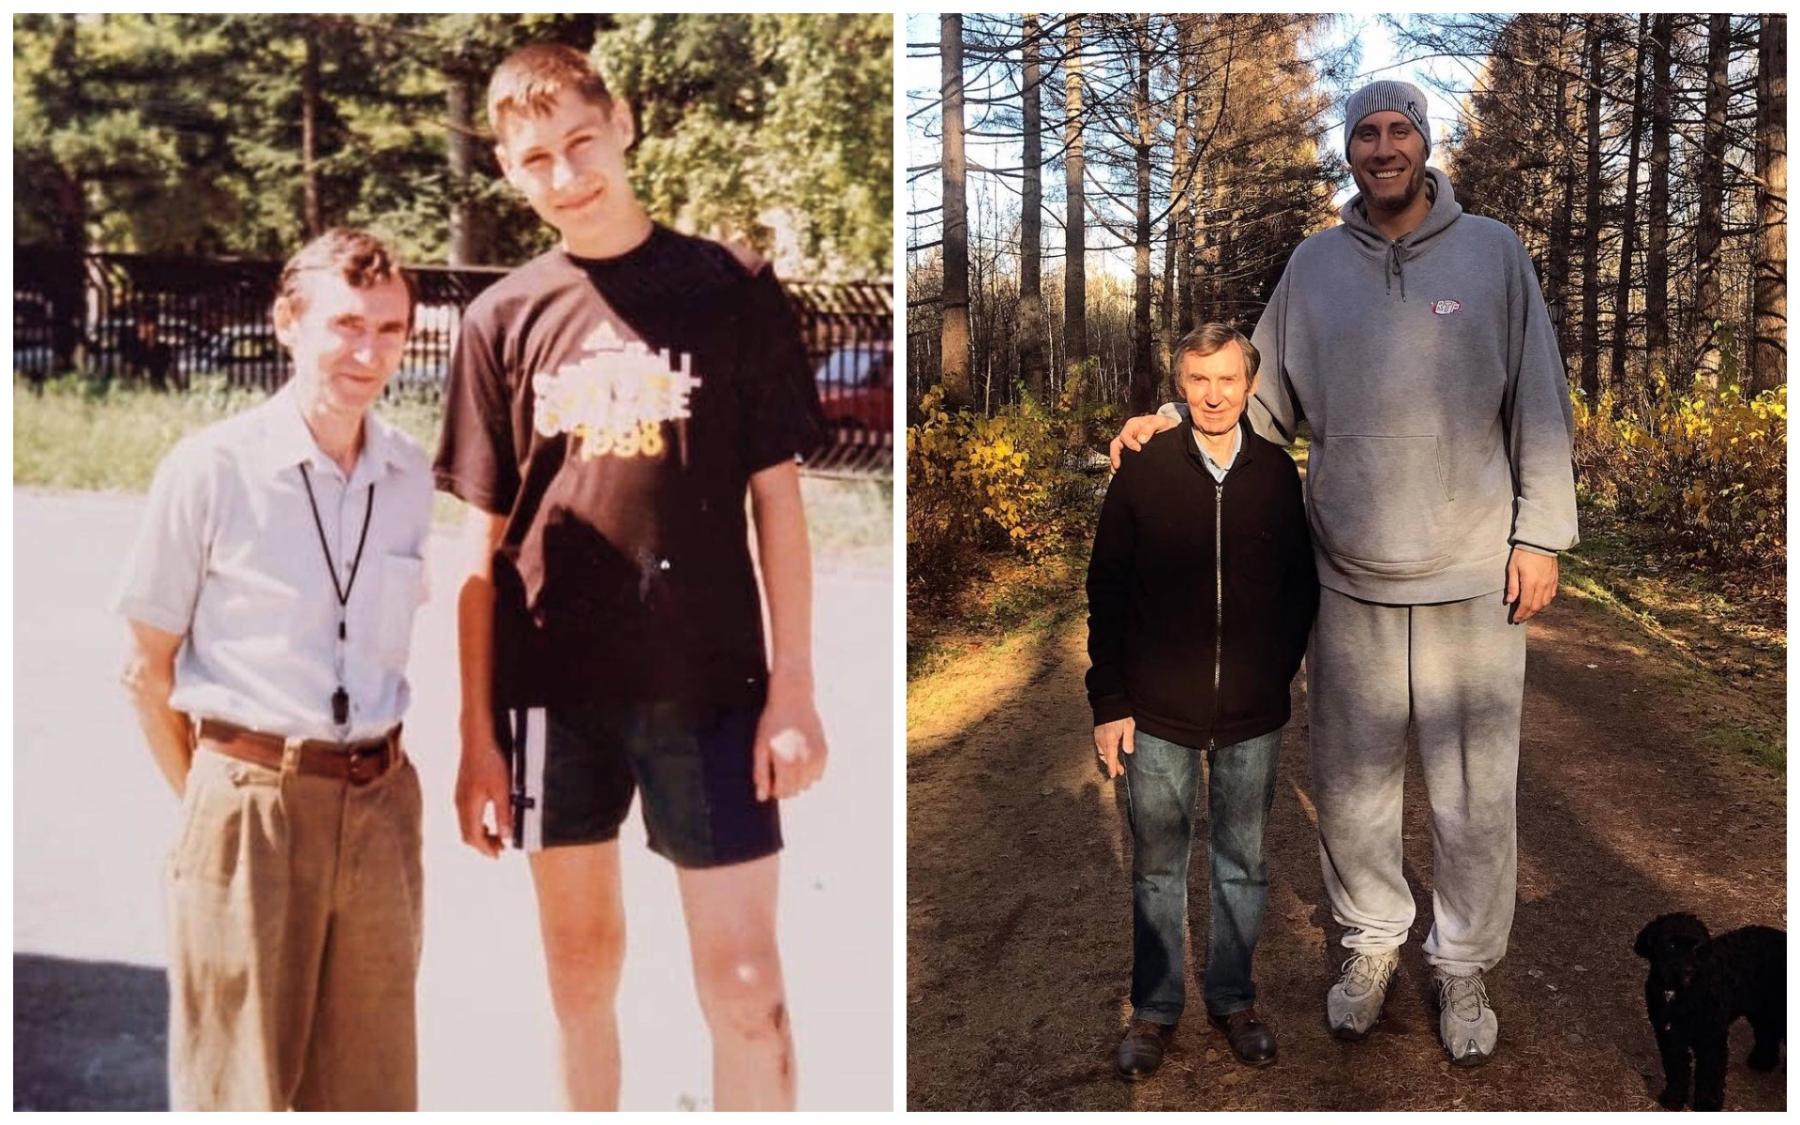 Фото «Чё такой здоровый?». 223-сантиметровый баскетболист из Новосибирска стал актёром и политиком после НБА 3